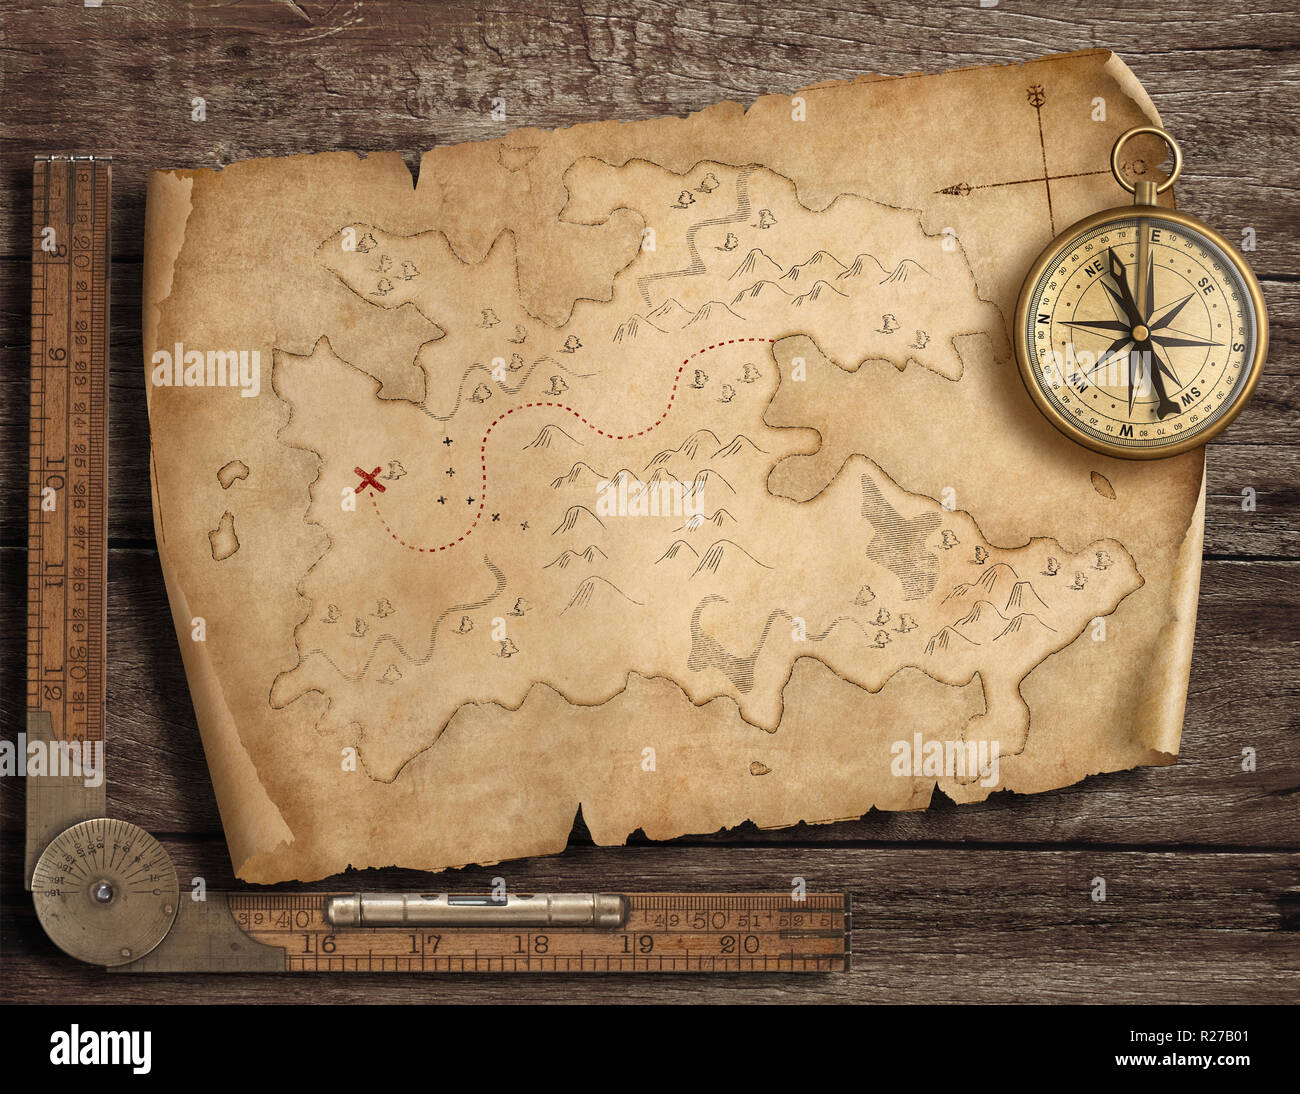 Old Pirates' Karte mit Messing Kompass. Abenteuer und Reisen Konzept. 3D-Darstellung. Stockfoto